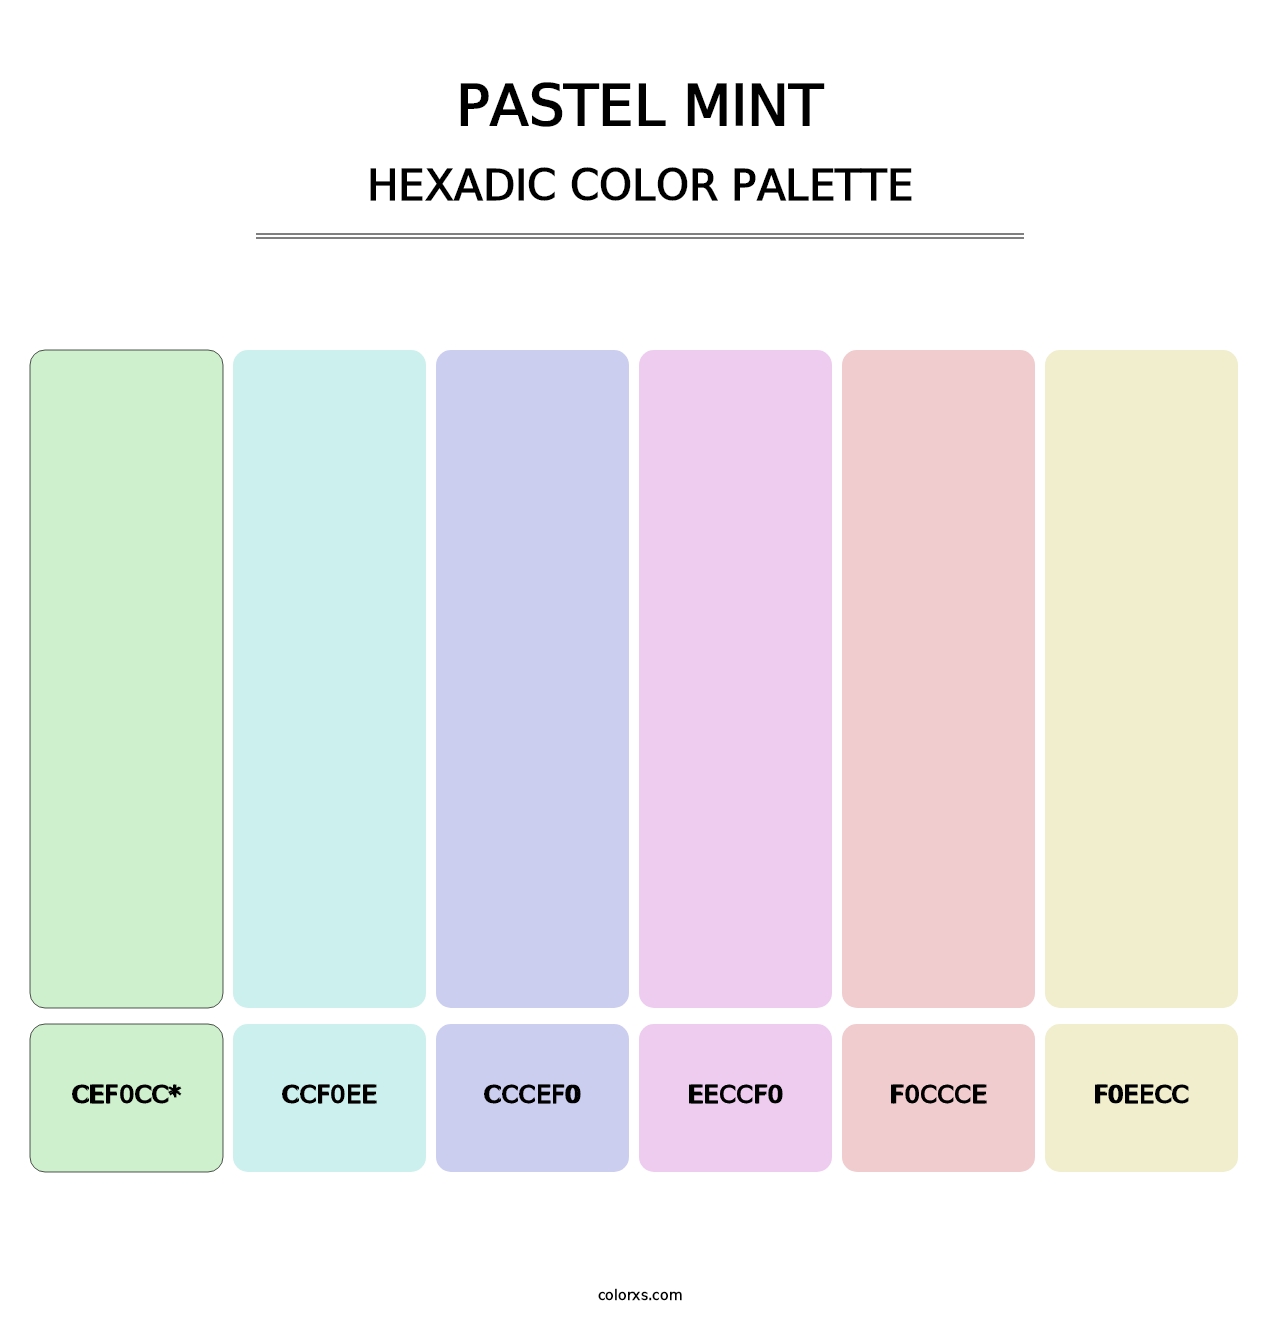 Pastel Mint - Hexadic Color Palette